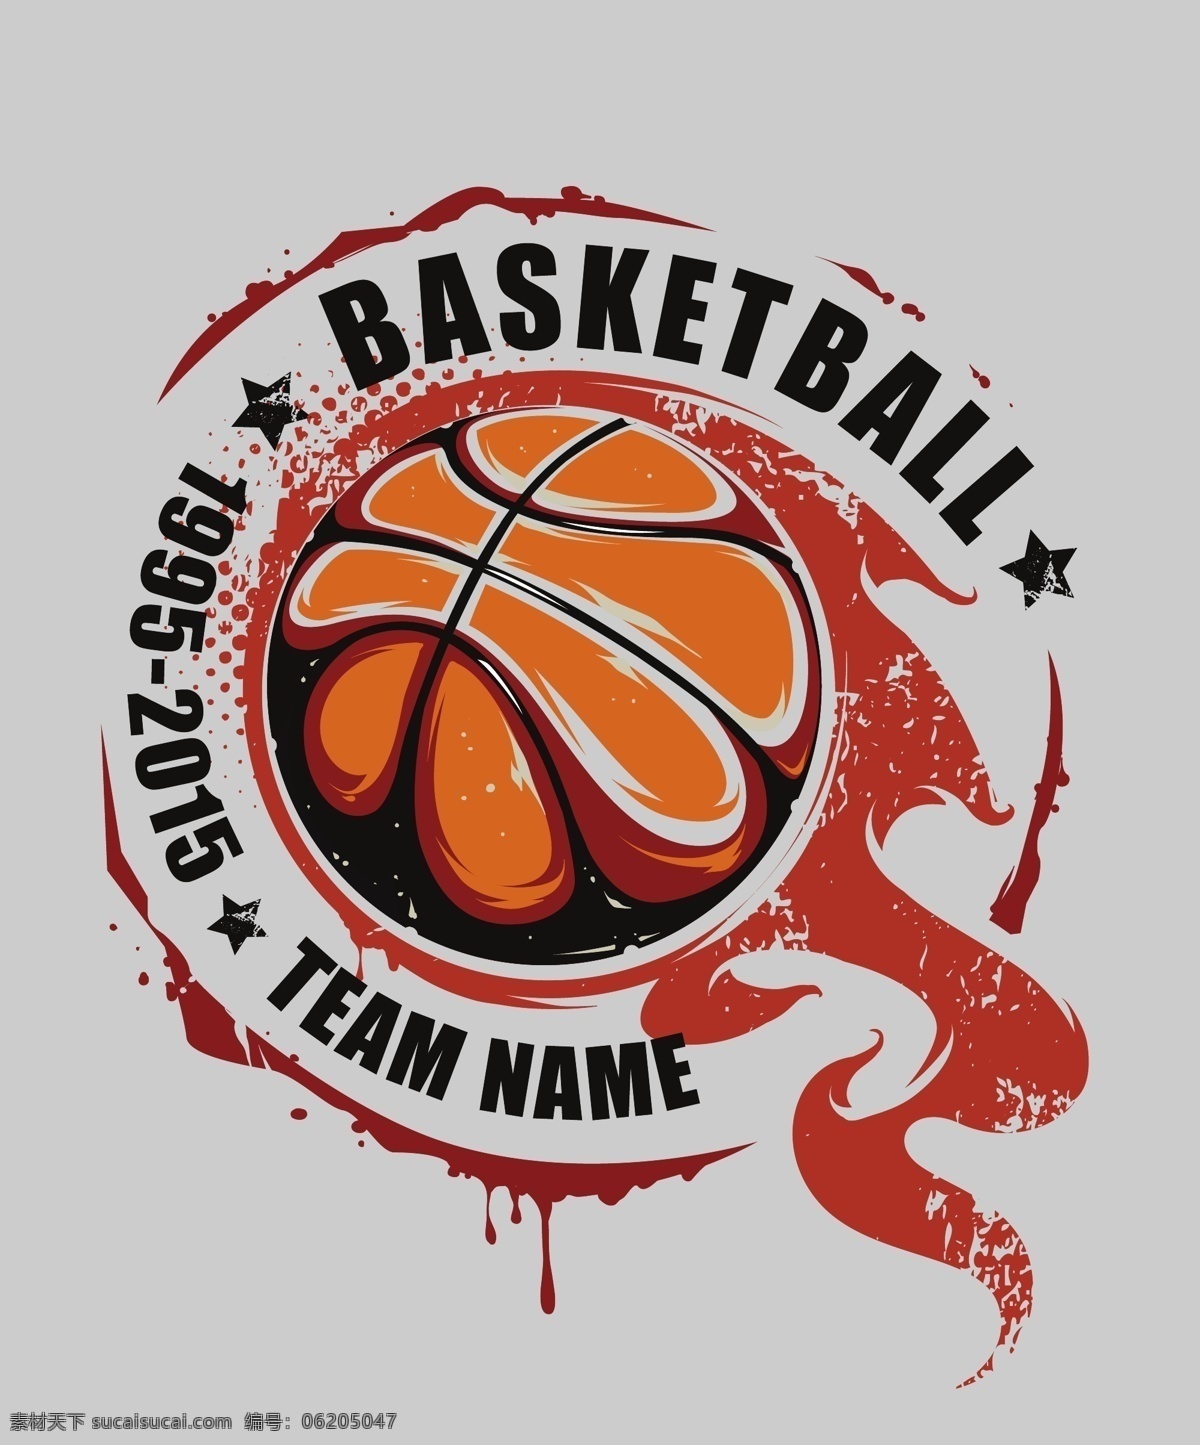 篮球队的标志 篮球队徽 篮球标志 篮球队 标志 共享设计矢量 标志图标 其他图标